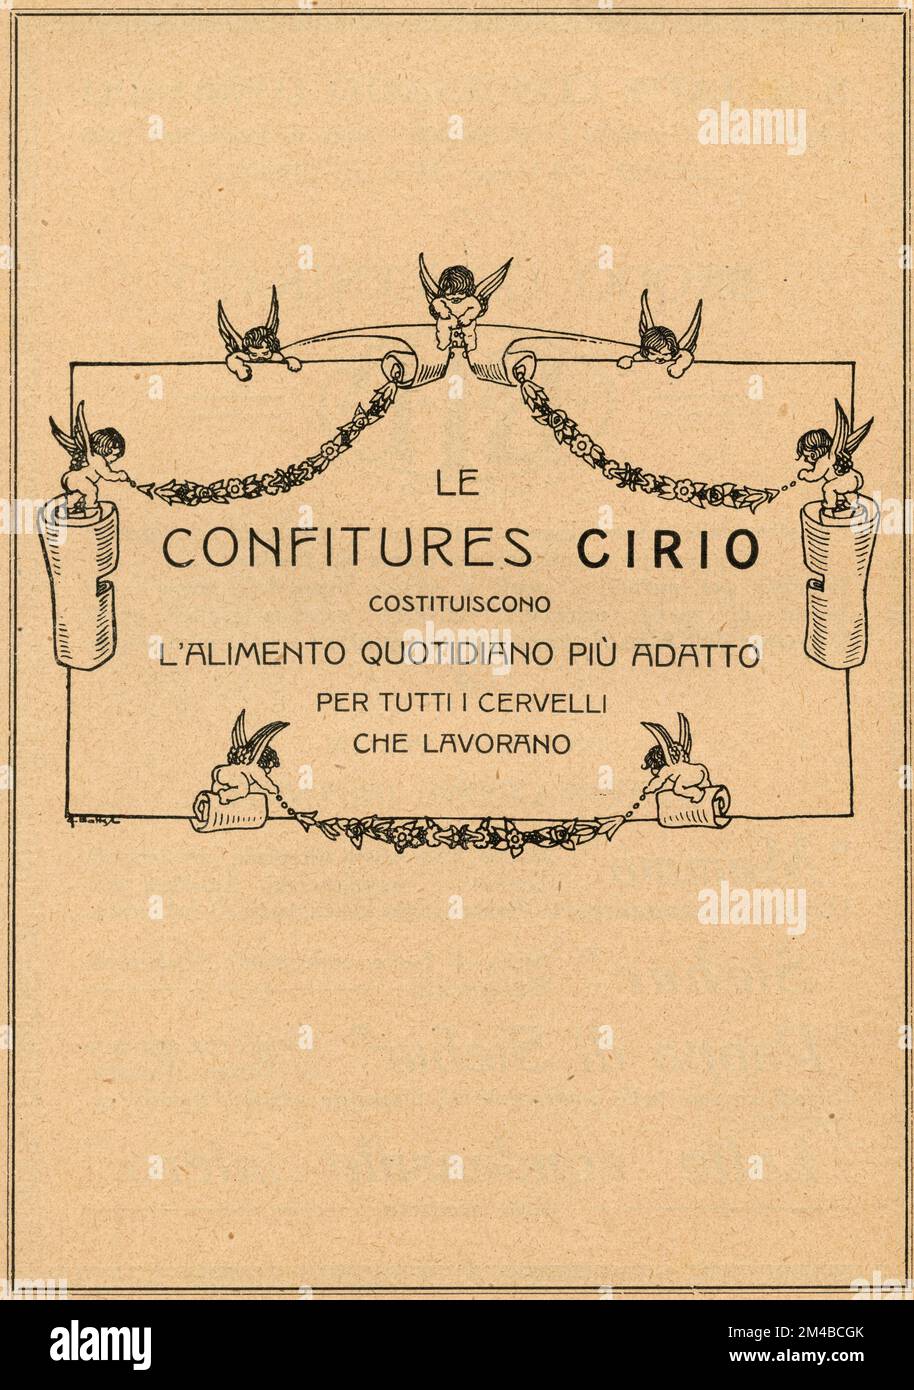 Anuncio de periódico vintage de Cirio confitures, Italia 1920s Foto de stock